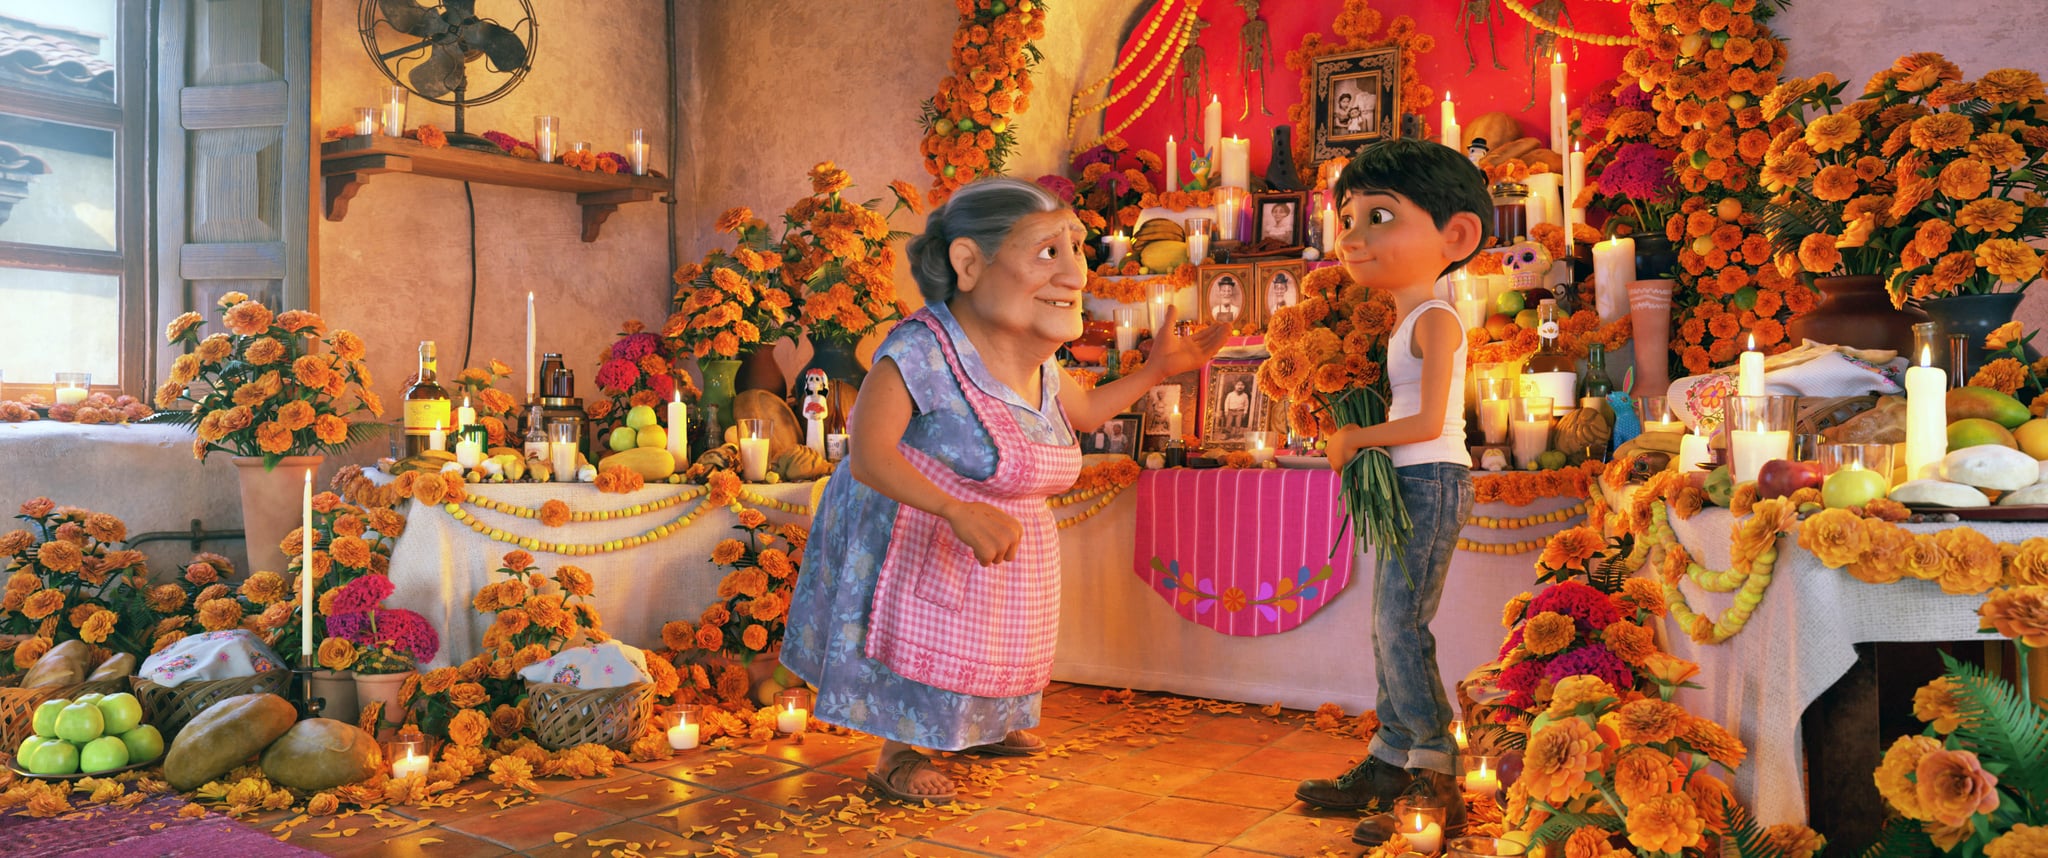 How Disney’s “Coco” Helped Destigmatize Día de los Muertos